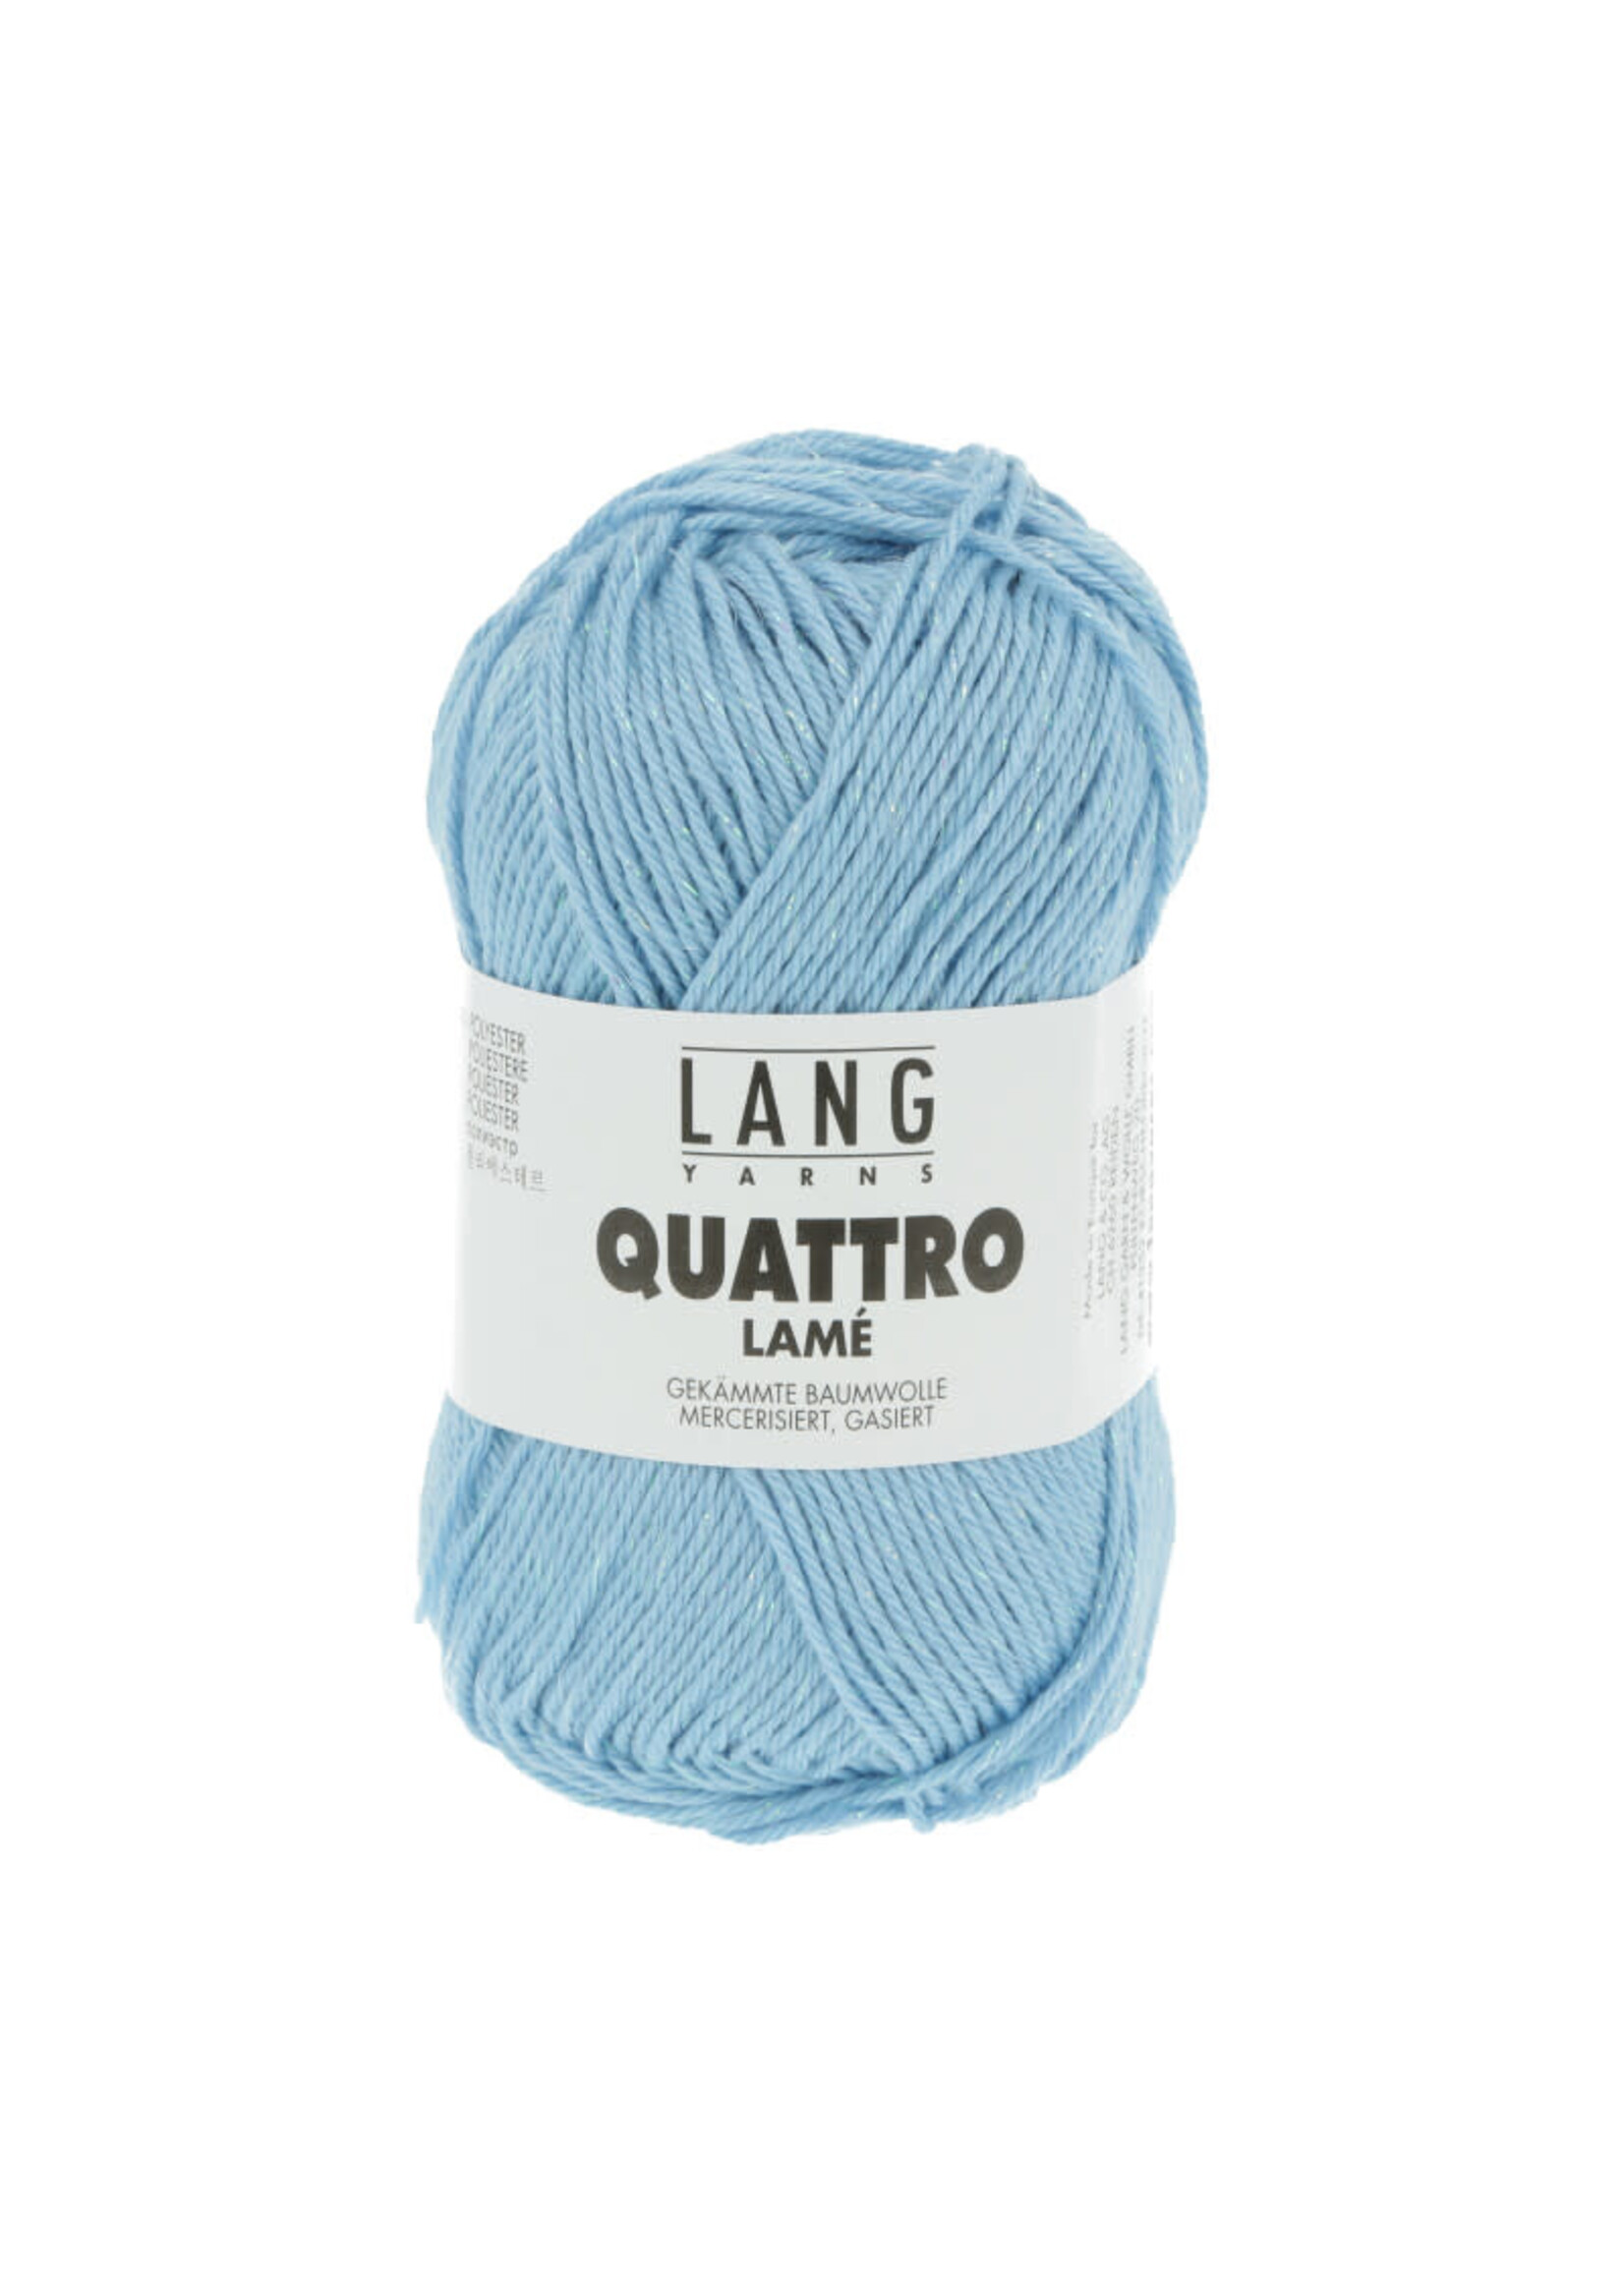 LangYarns Quattro Lamé - 0021 Licht blauw